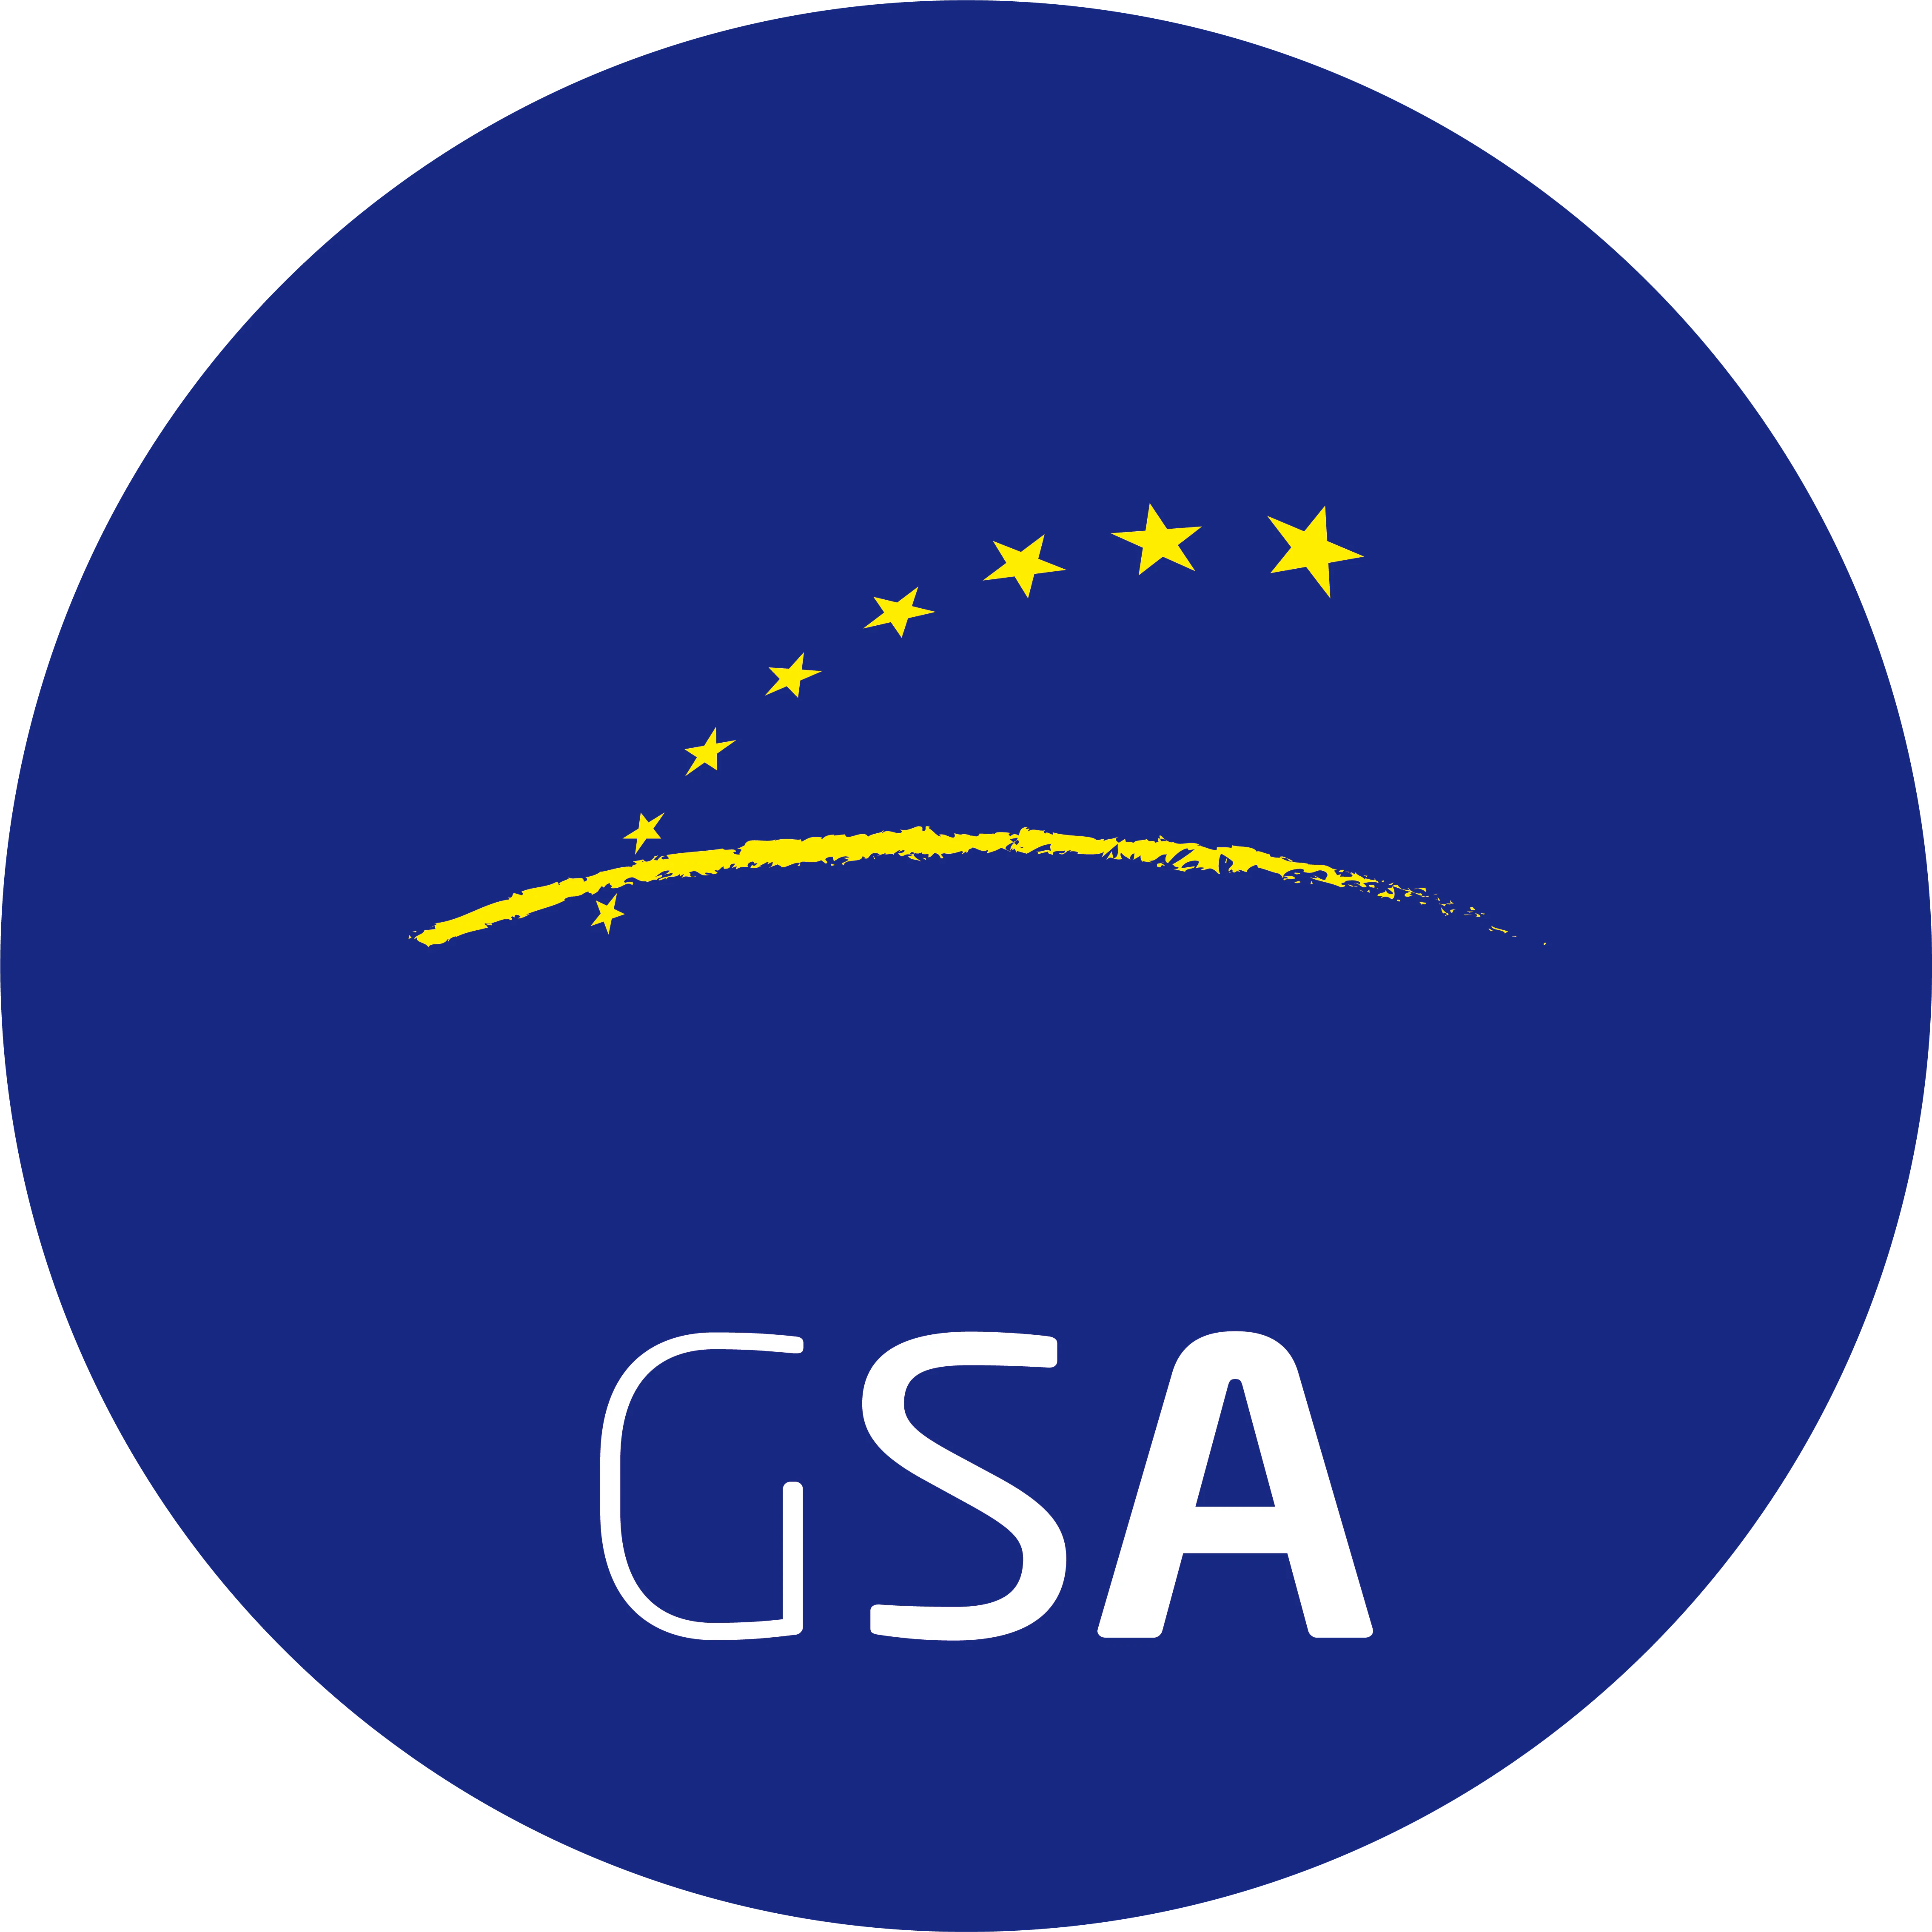 European GNSS Agency